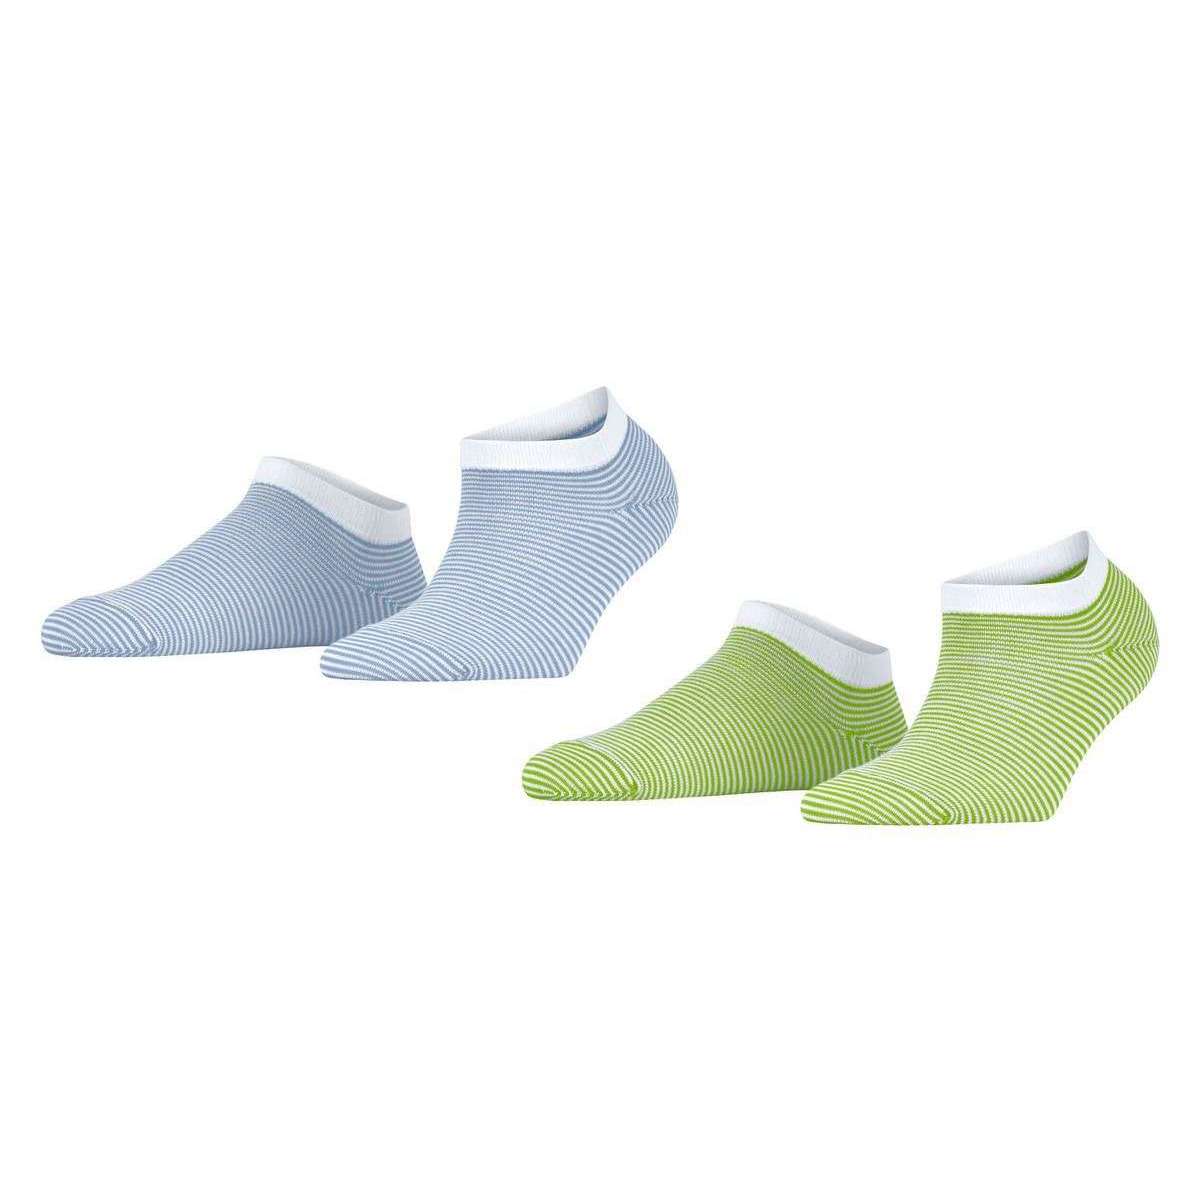 Esprit Allover Stripe 2 Pack Sneaker Socks - Green/Blue